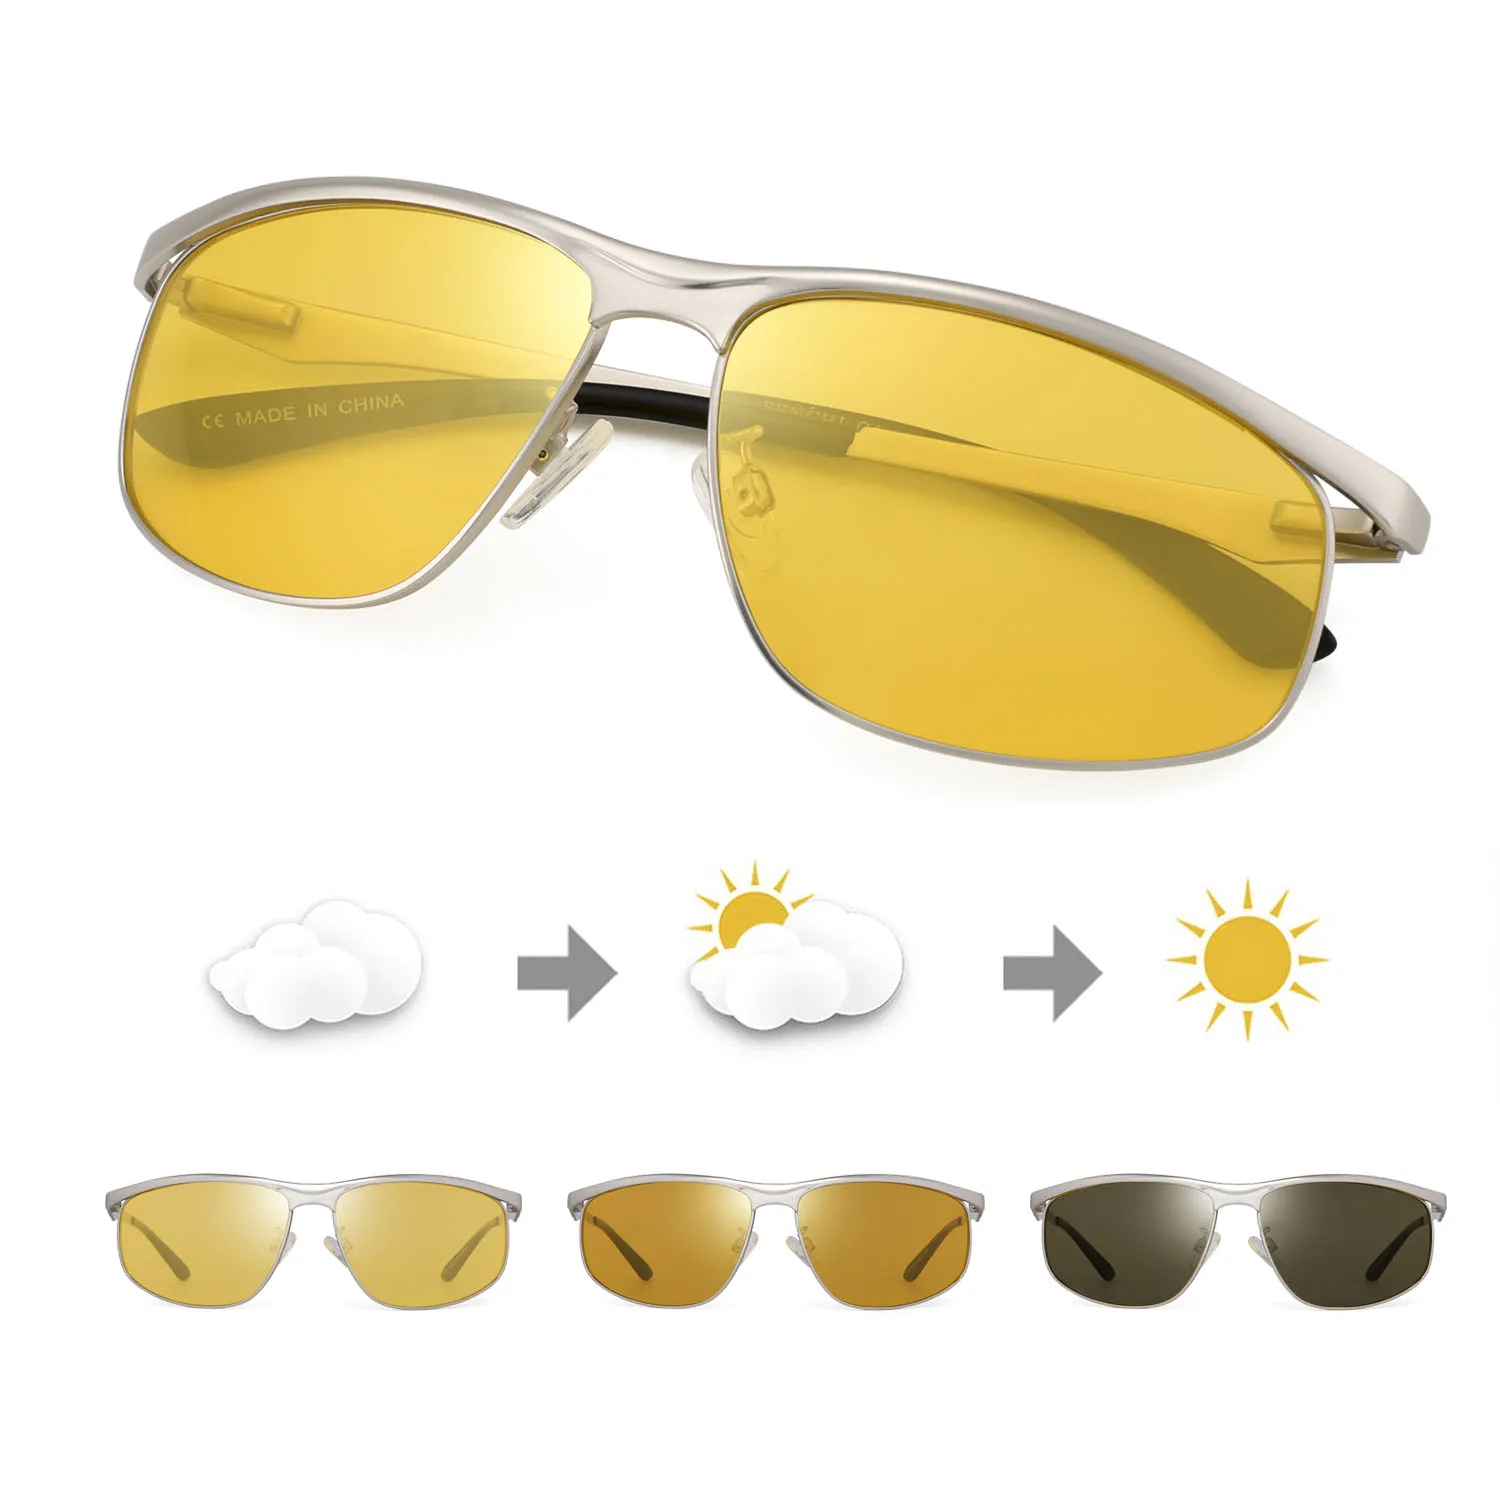 Поляризованные мужские очки ночного видения, антибликовые линзы, желтые солнцезащитные очки, очки ночного видения для вождения автомобиля, очки Nocturna